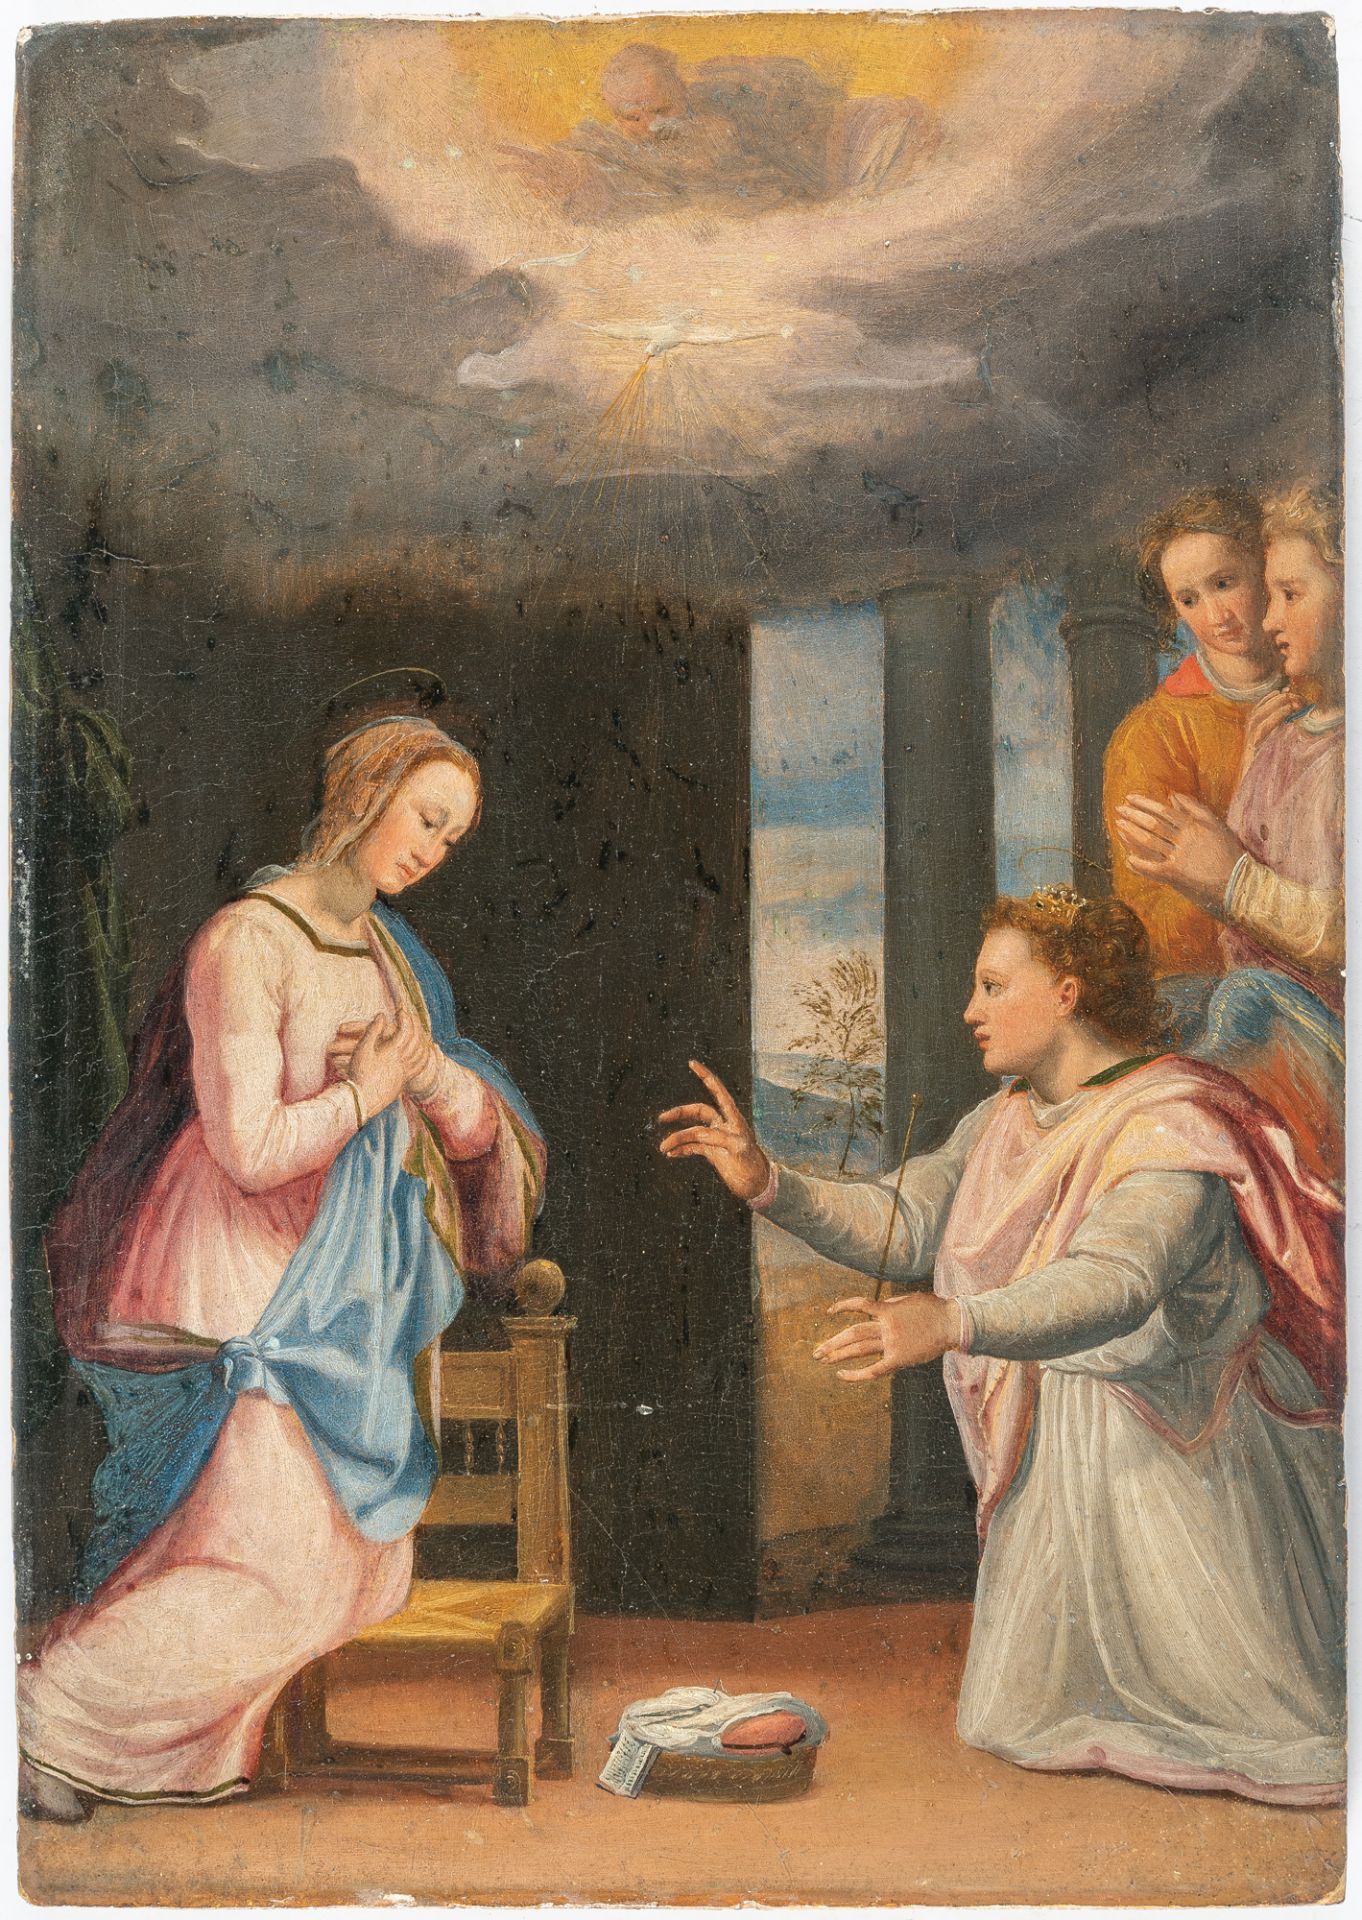 Santi di Tito und Werkstatt – The Annunciation - Image 2 of 4